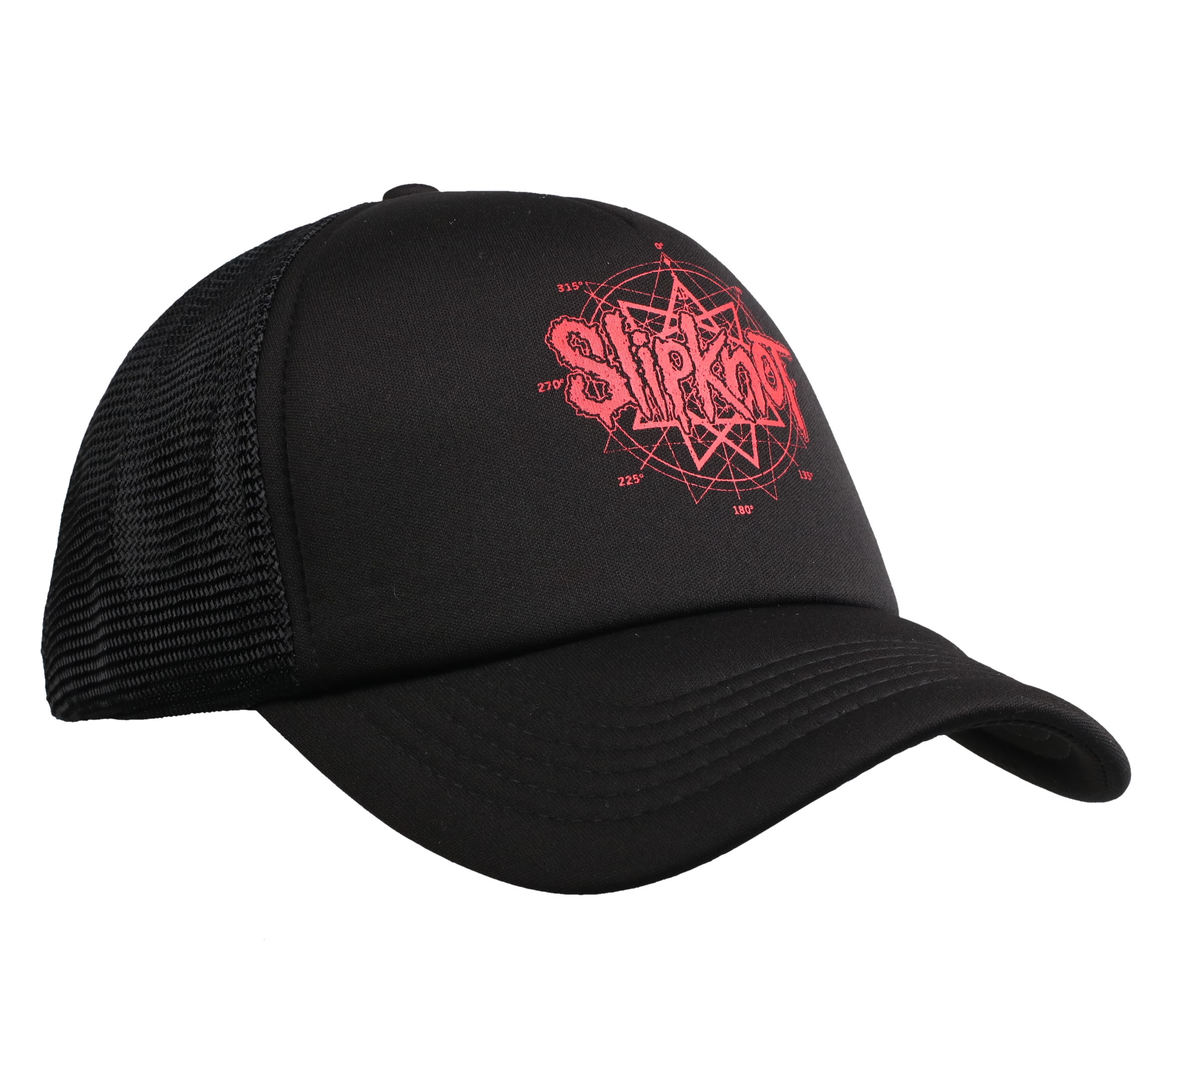 Slipknot - Slipknot Mesh Logo